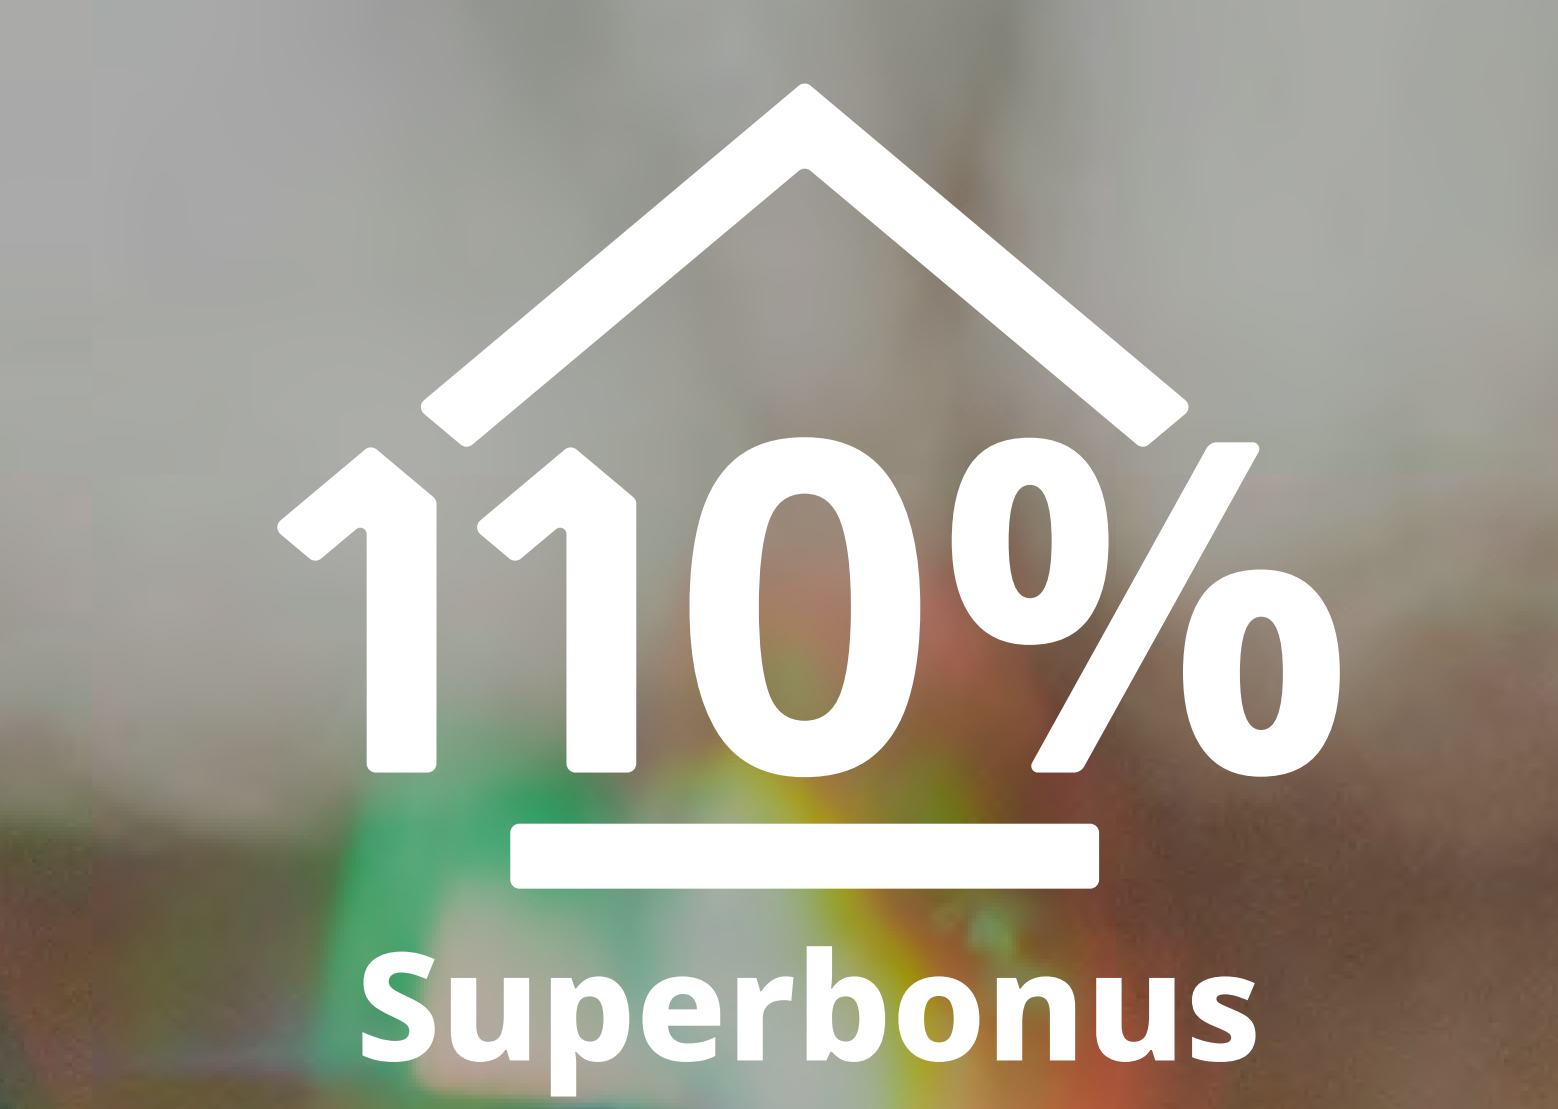 Superbonus e bonus casa. Aggiornamento in circolare-guida dall’Agenzia delle Entrate